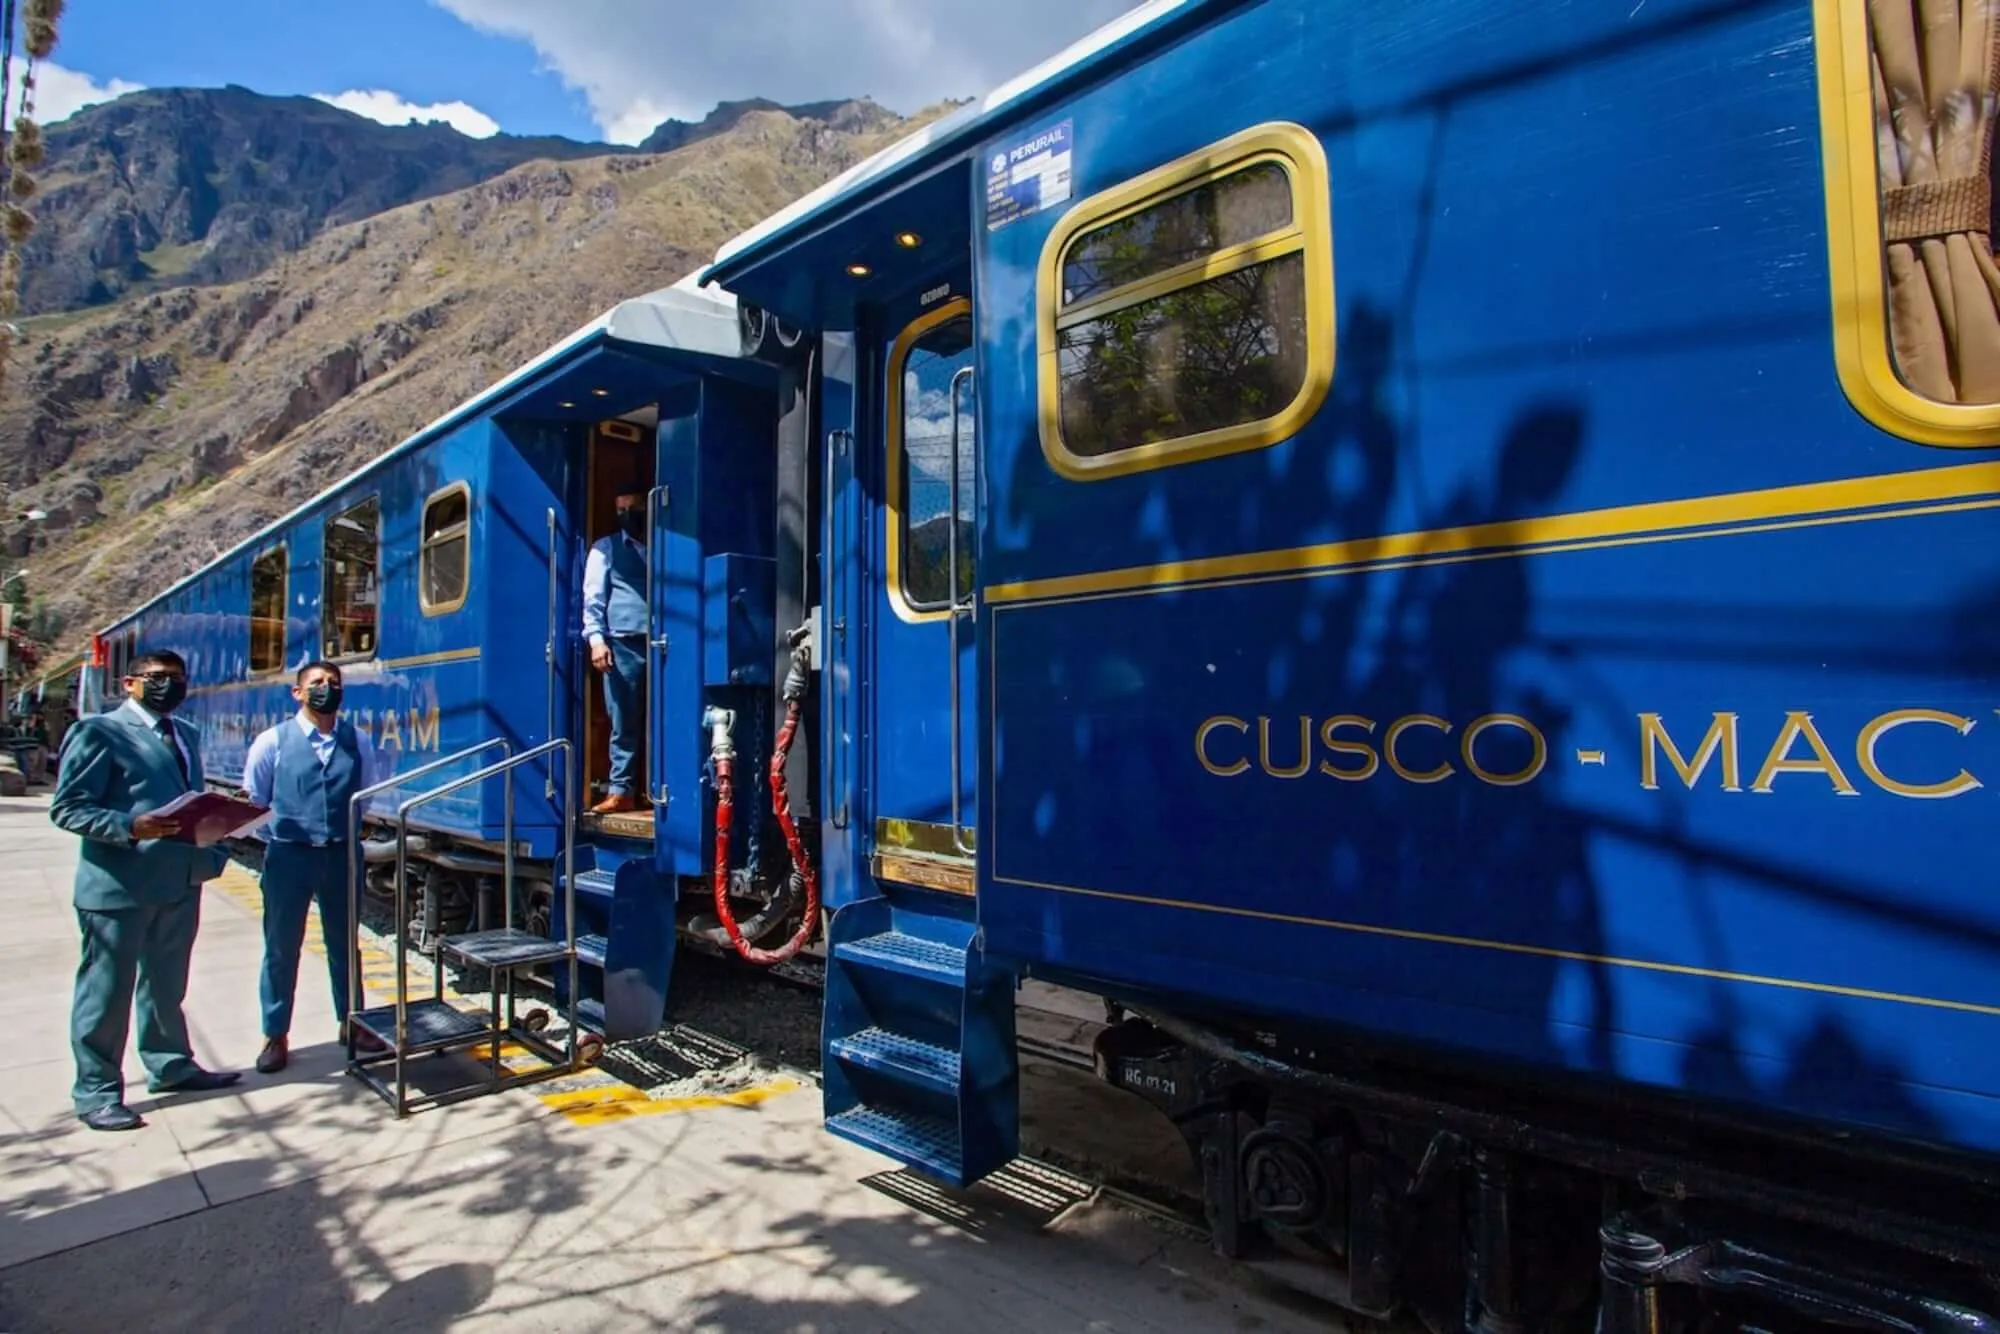 Hiram Bingham Orient Express in Peru, South America | Scenic Trains - Rated 4.2